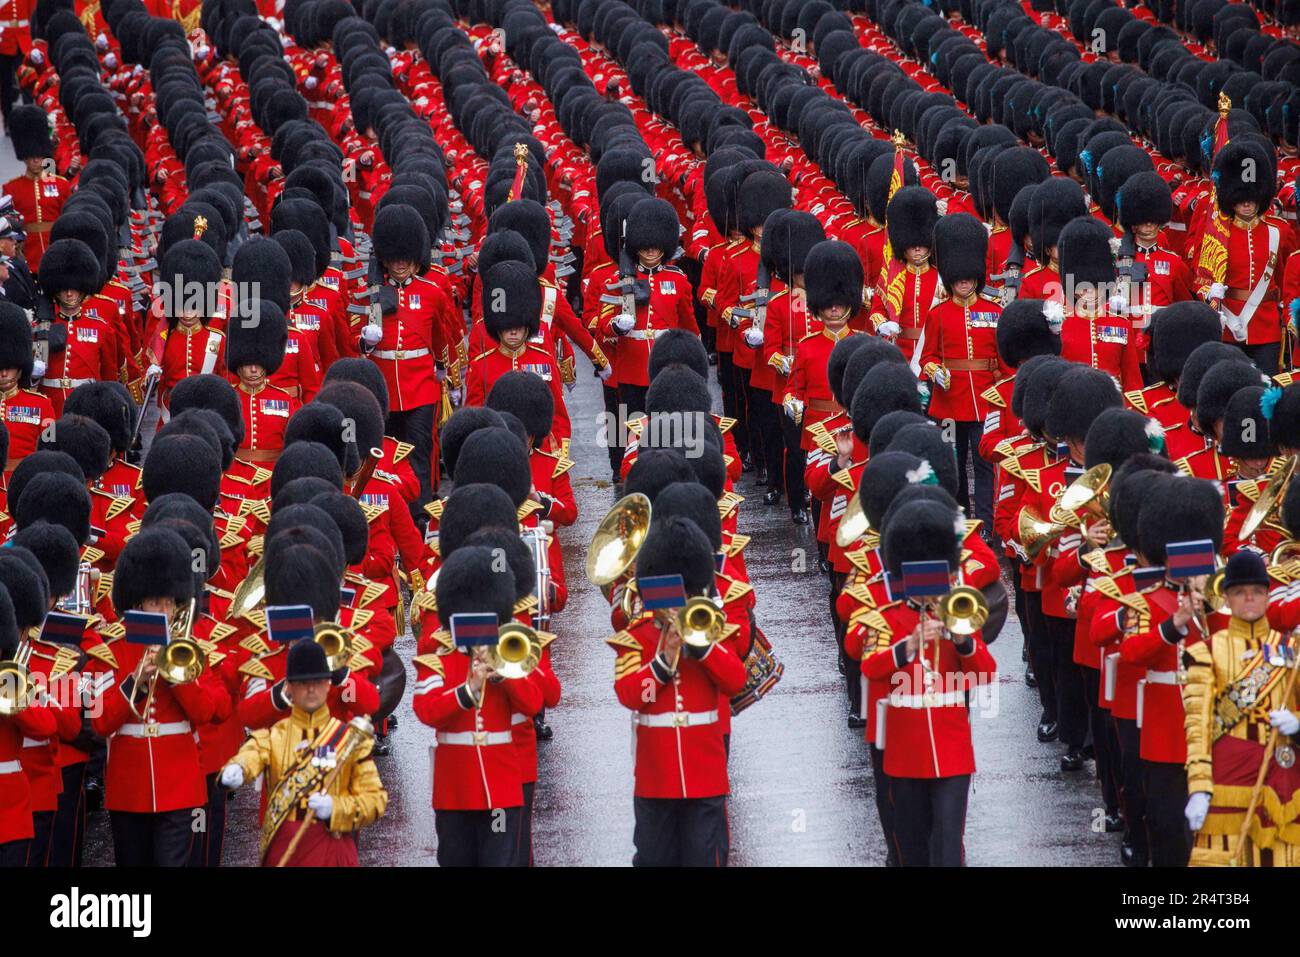 Un groupe de Grenadier Guards jouent à la procession du Couronnement pour le roi Charles III et la reine Camilla alors qu'ils se dirigent vers le palais de Buckingham. Banque D'Images